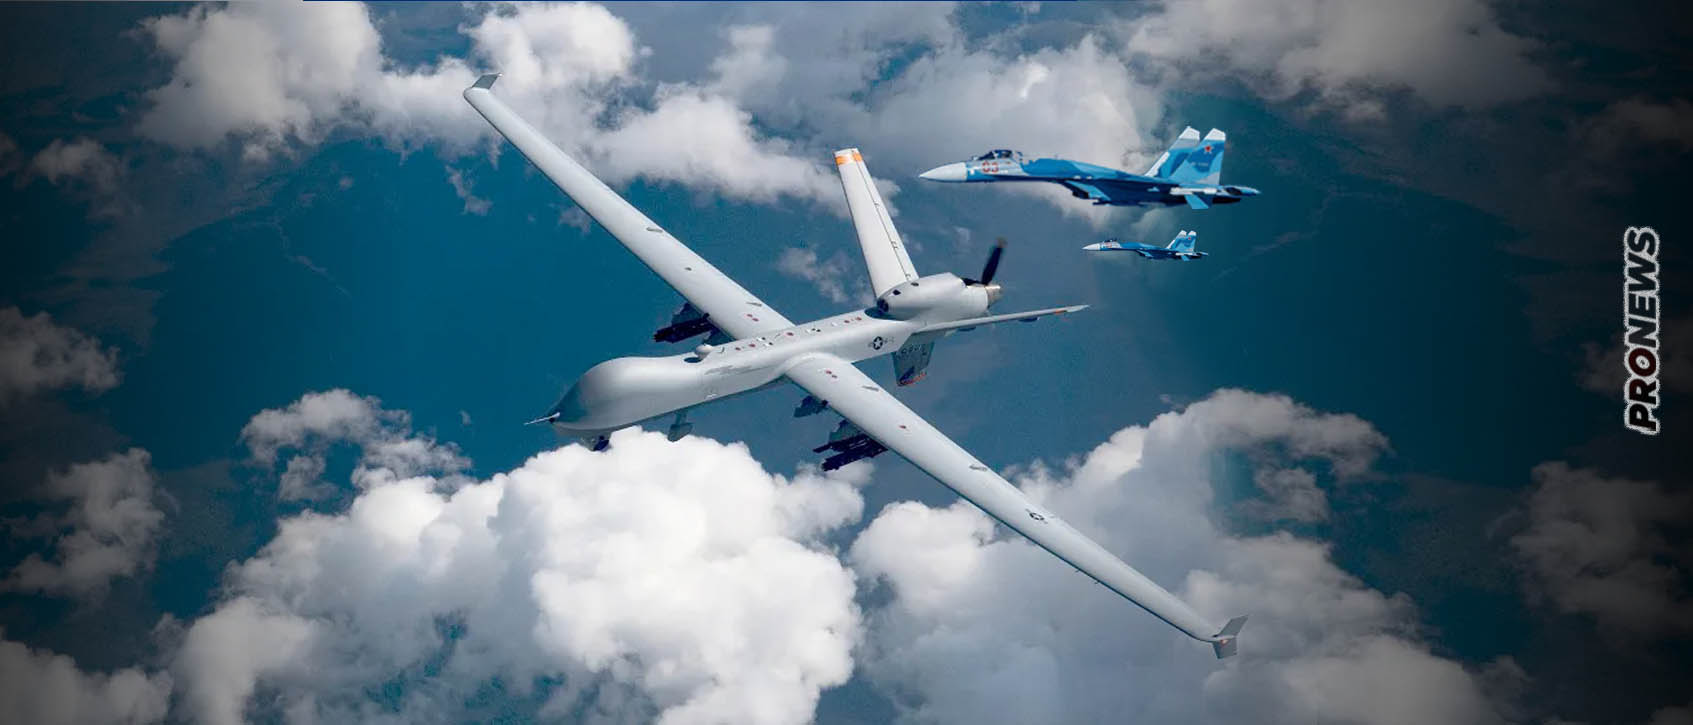 Ρωσικό μαχητικό αεροσκάφος Su-27 έστειλε στον πάτο της Μαύρης Θάλασσας drone MQ-9 Reaper των ΗΠΑ